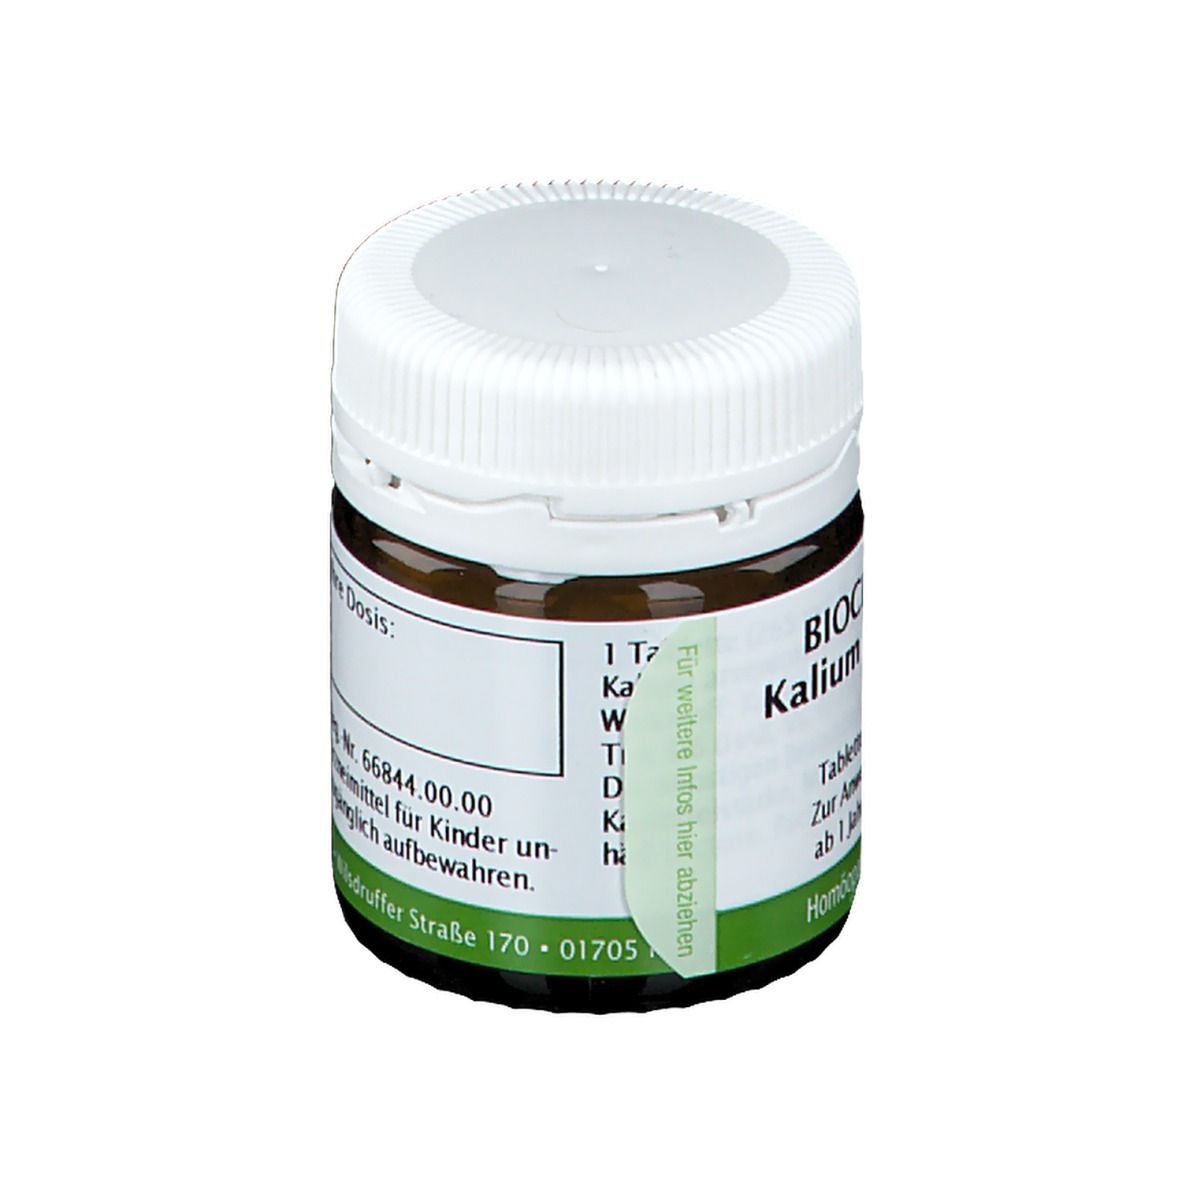 Bombastus Biochemie 13 Kalium arsenicosum D 6 Tabletten